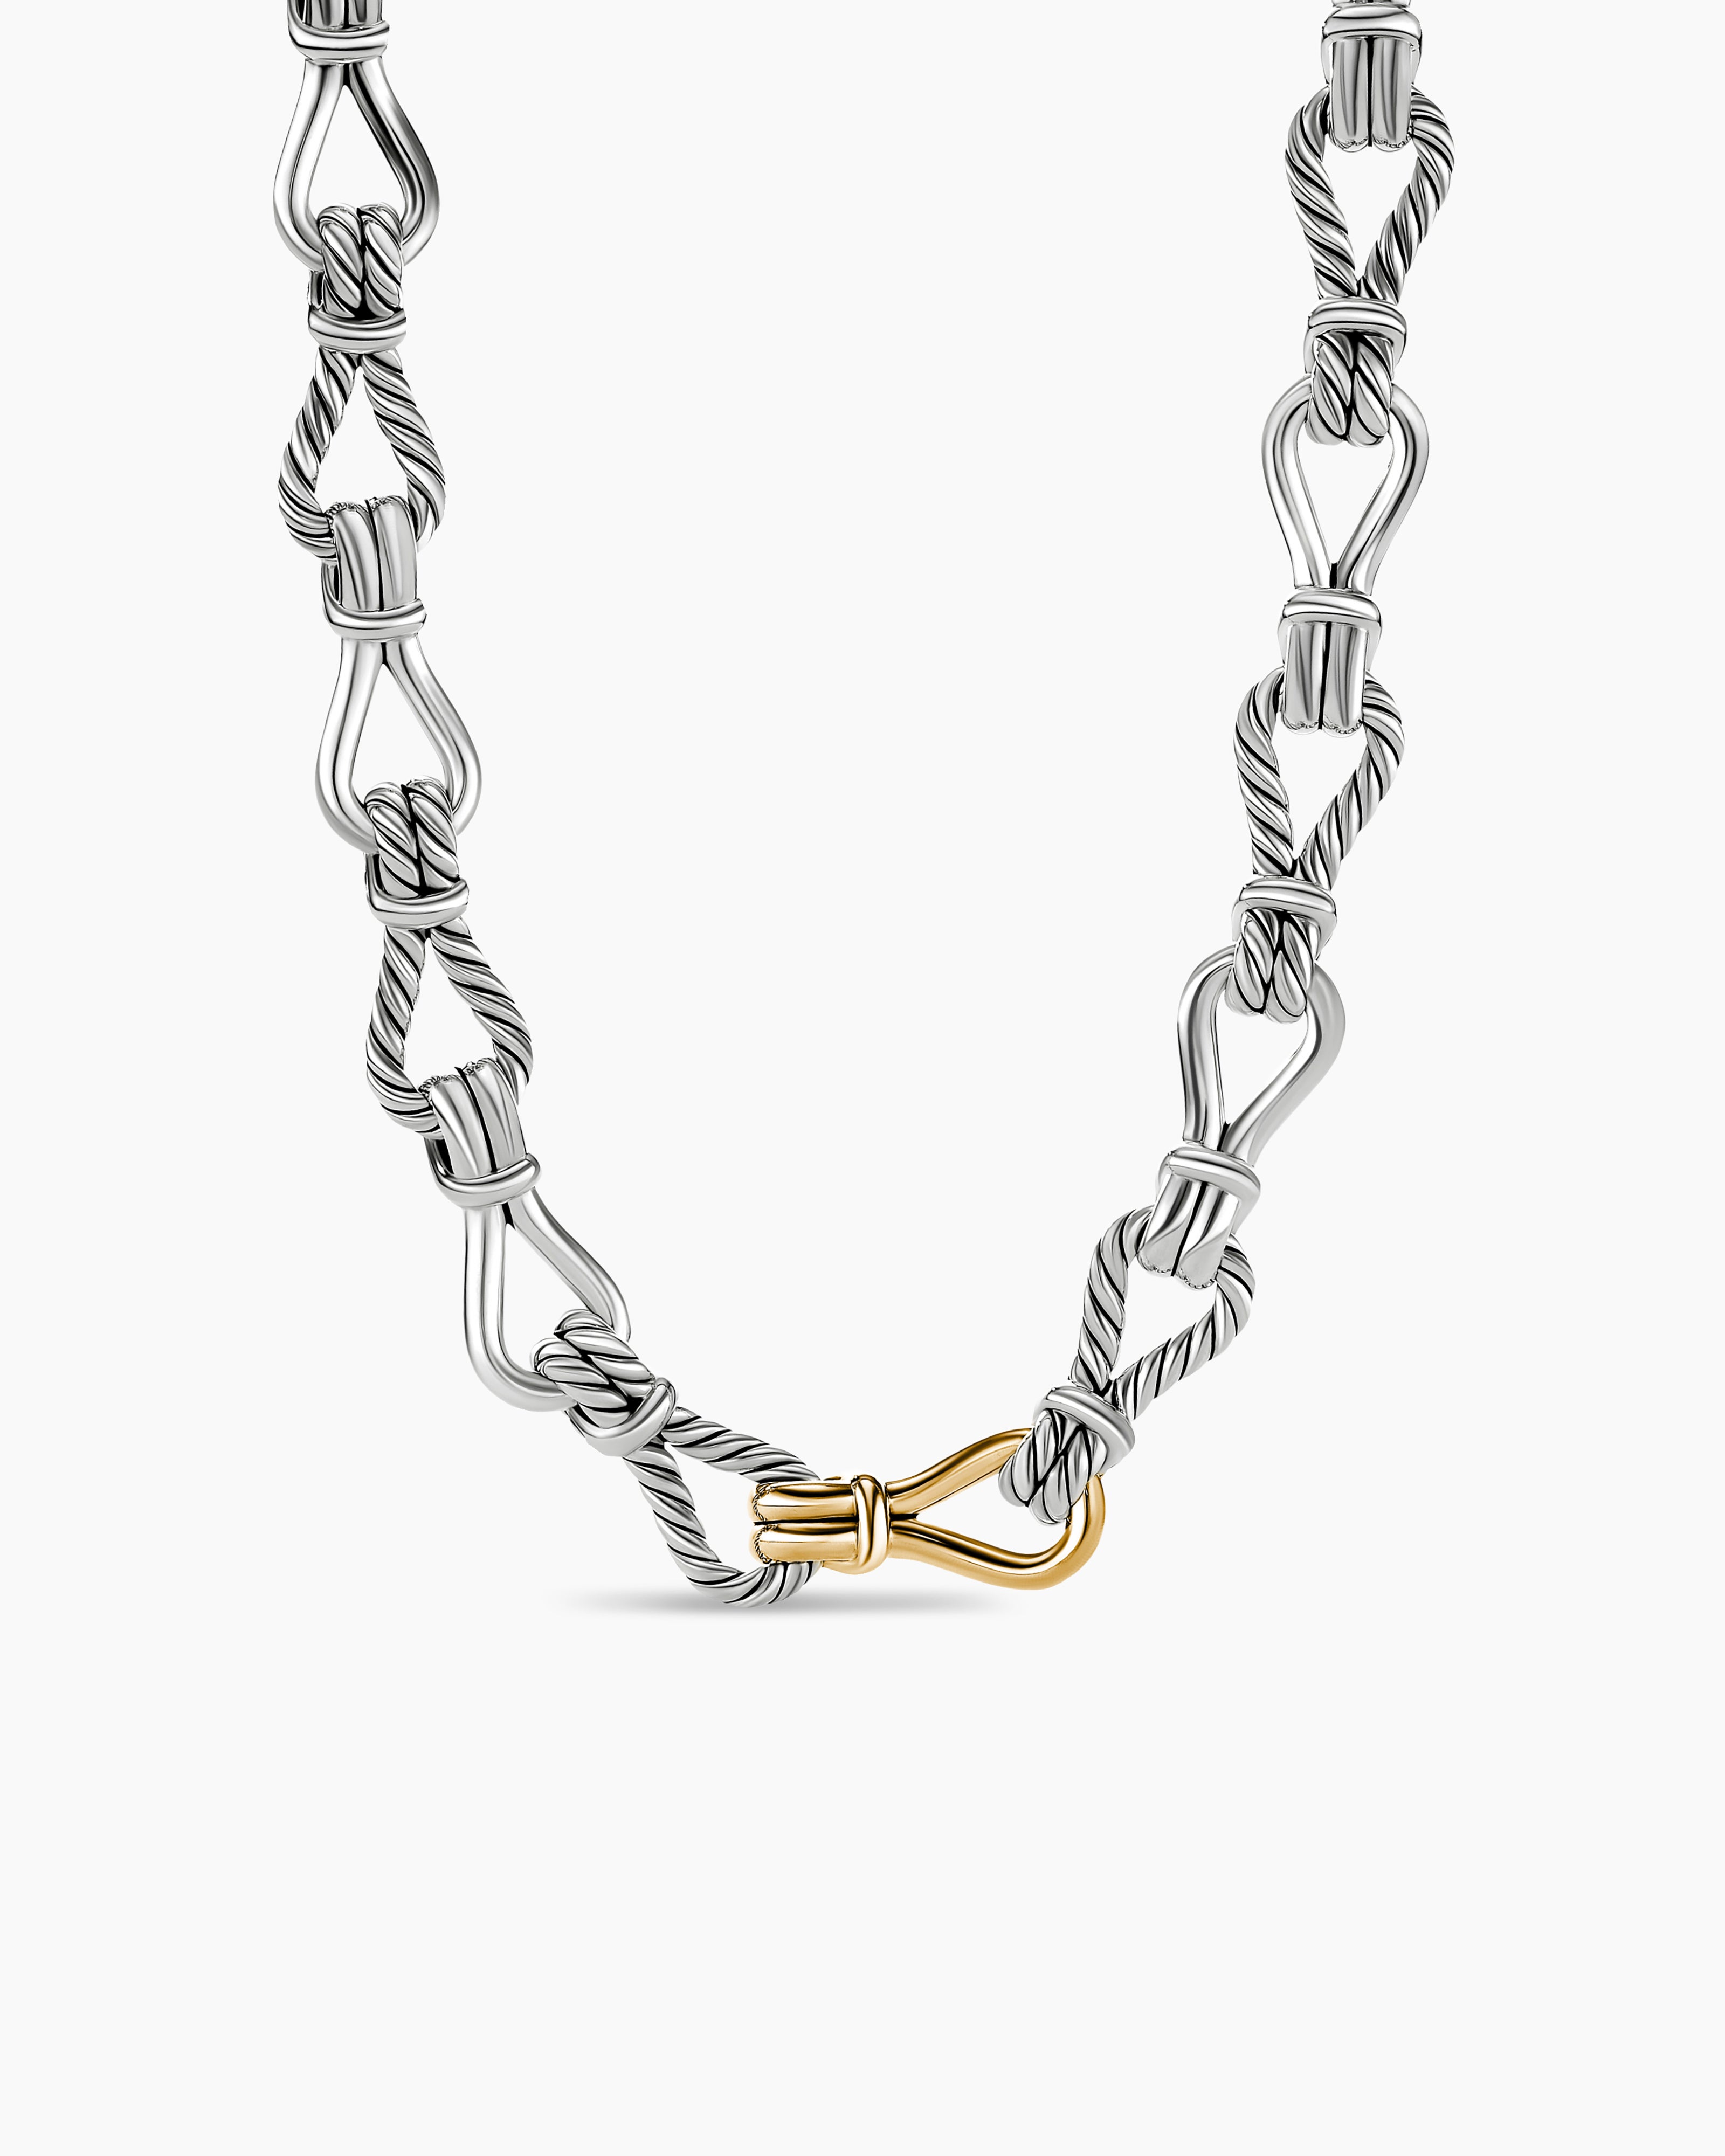 David Yurman Thoroughbred Loop Bracelet with 18K Yellow Gold - Medium